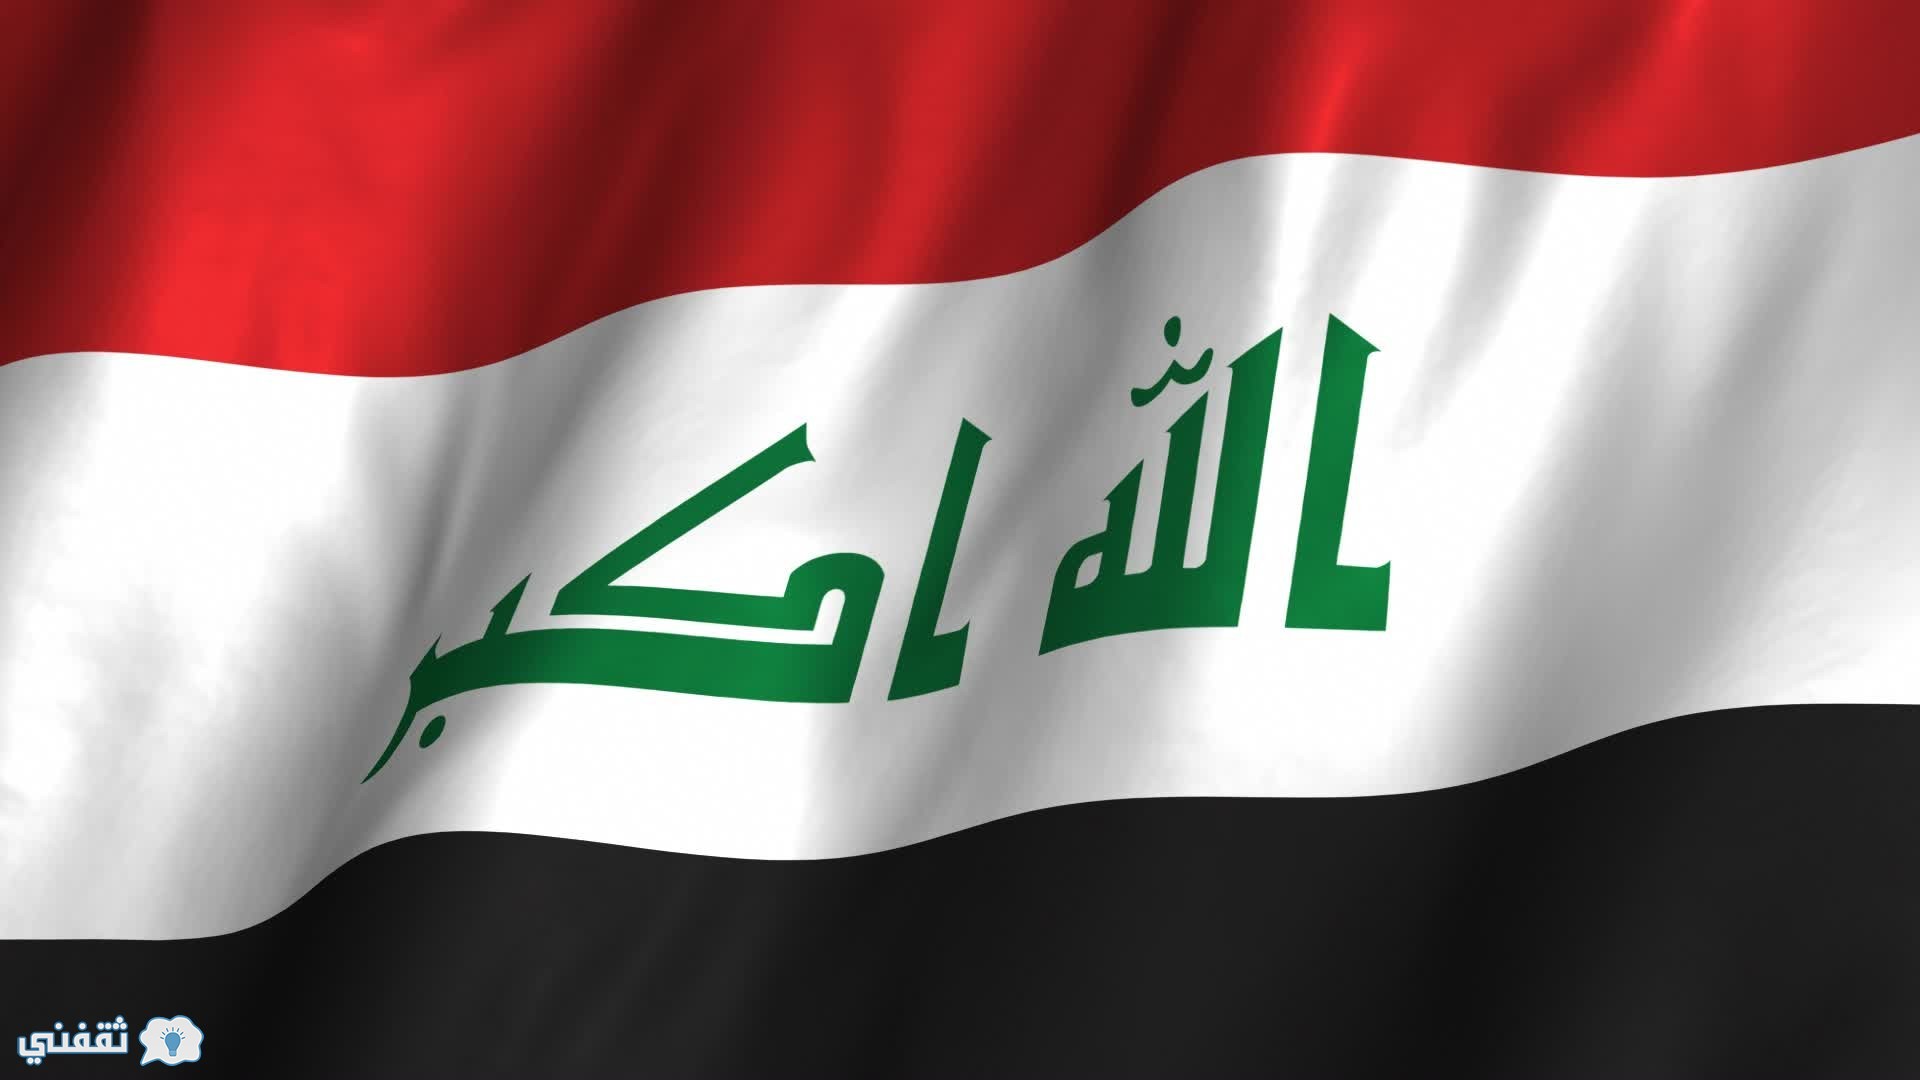 اخر اخبار العراق اليوم 22/7/2016: الدول المانحة تدعم بغداد بملياري دولار كمساعدات إنسانية